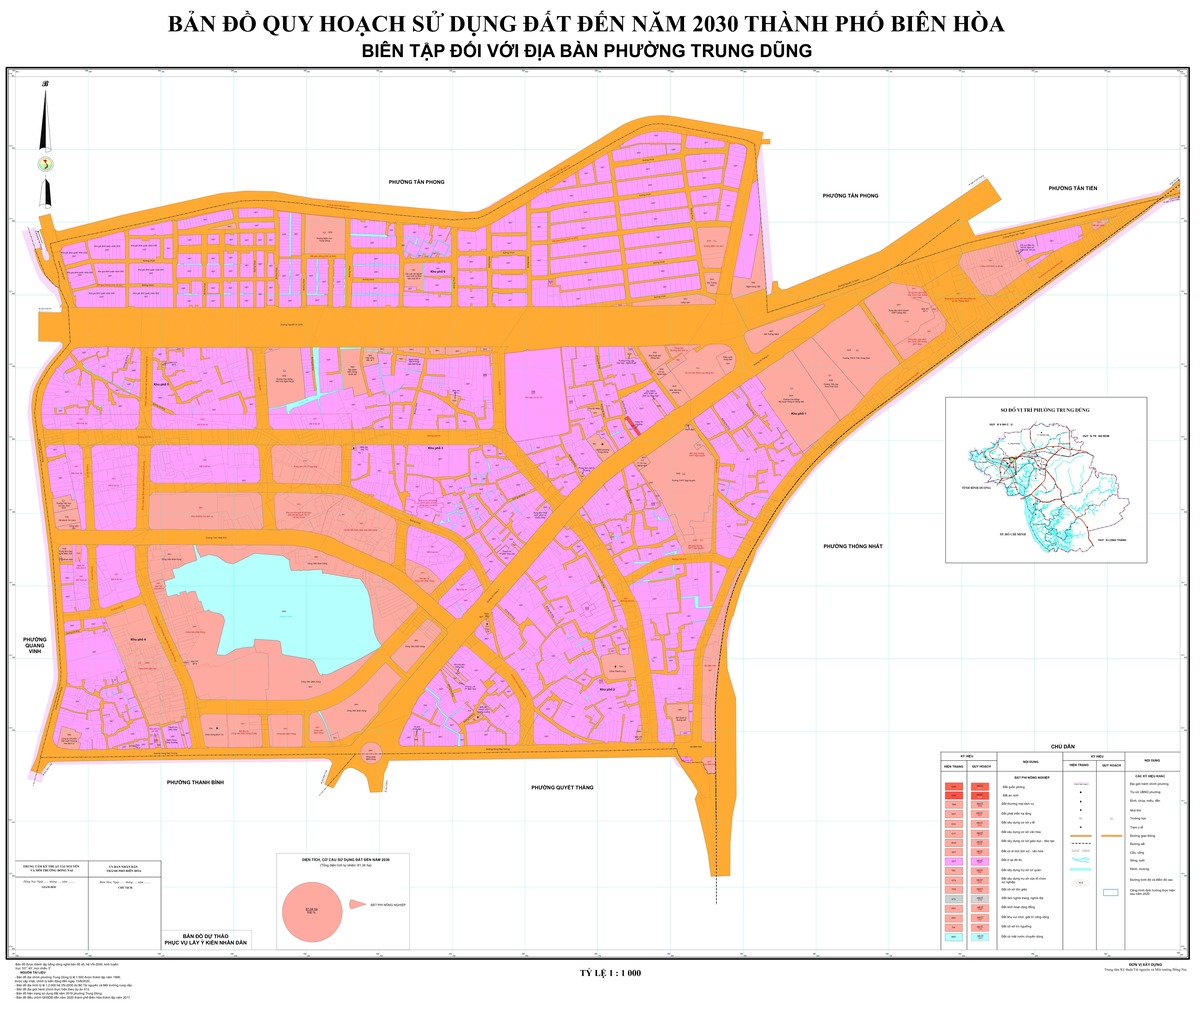 Bản đồ quy hoạch phường Trung Dũng, thành phố Biên Hòa, tỉnh Đồng Nai đến năm 2030